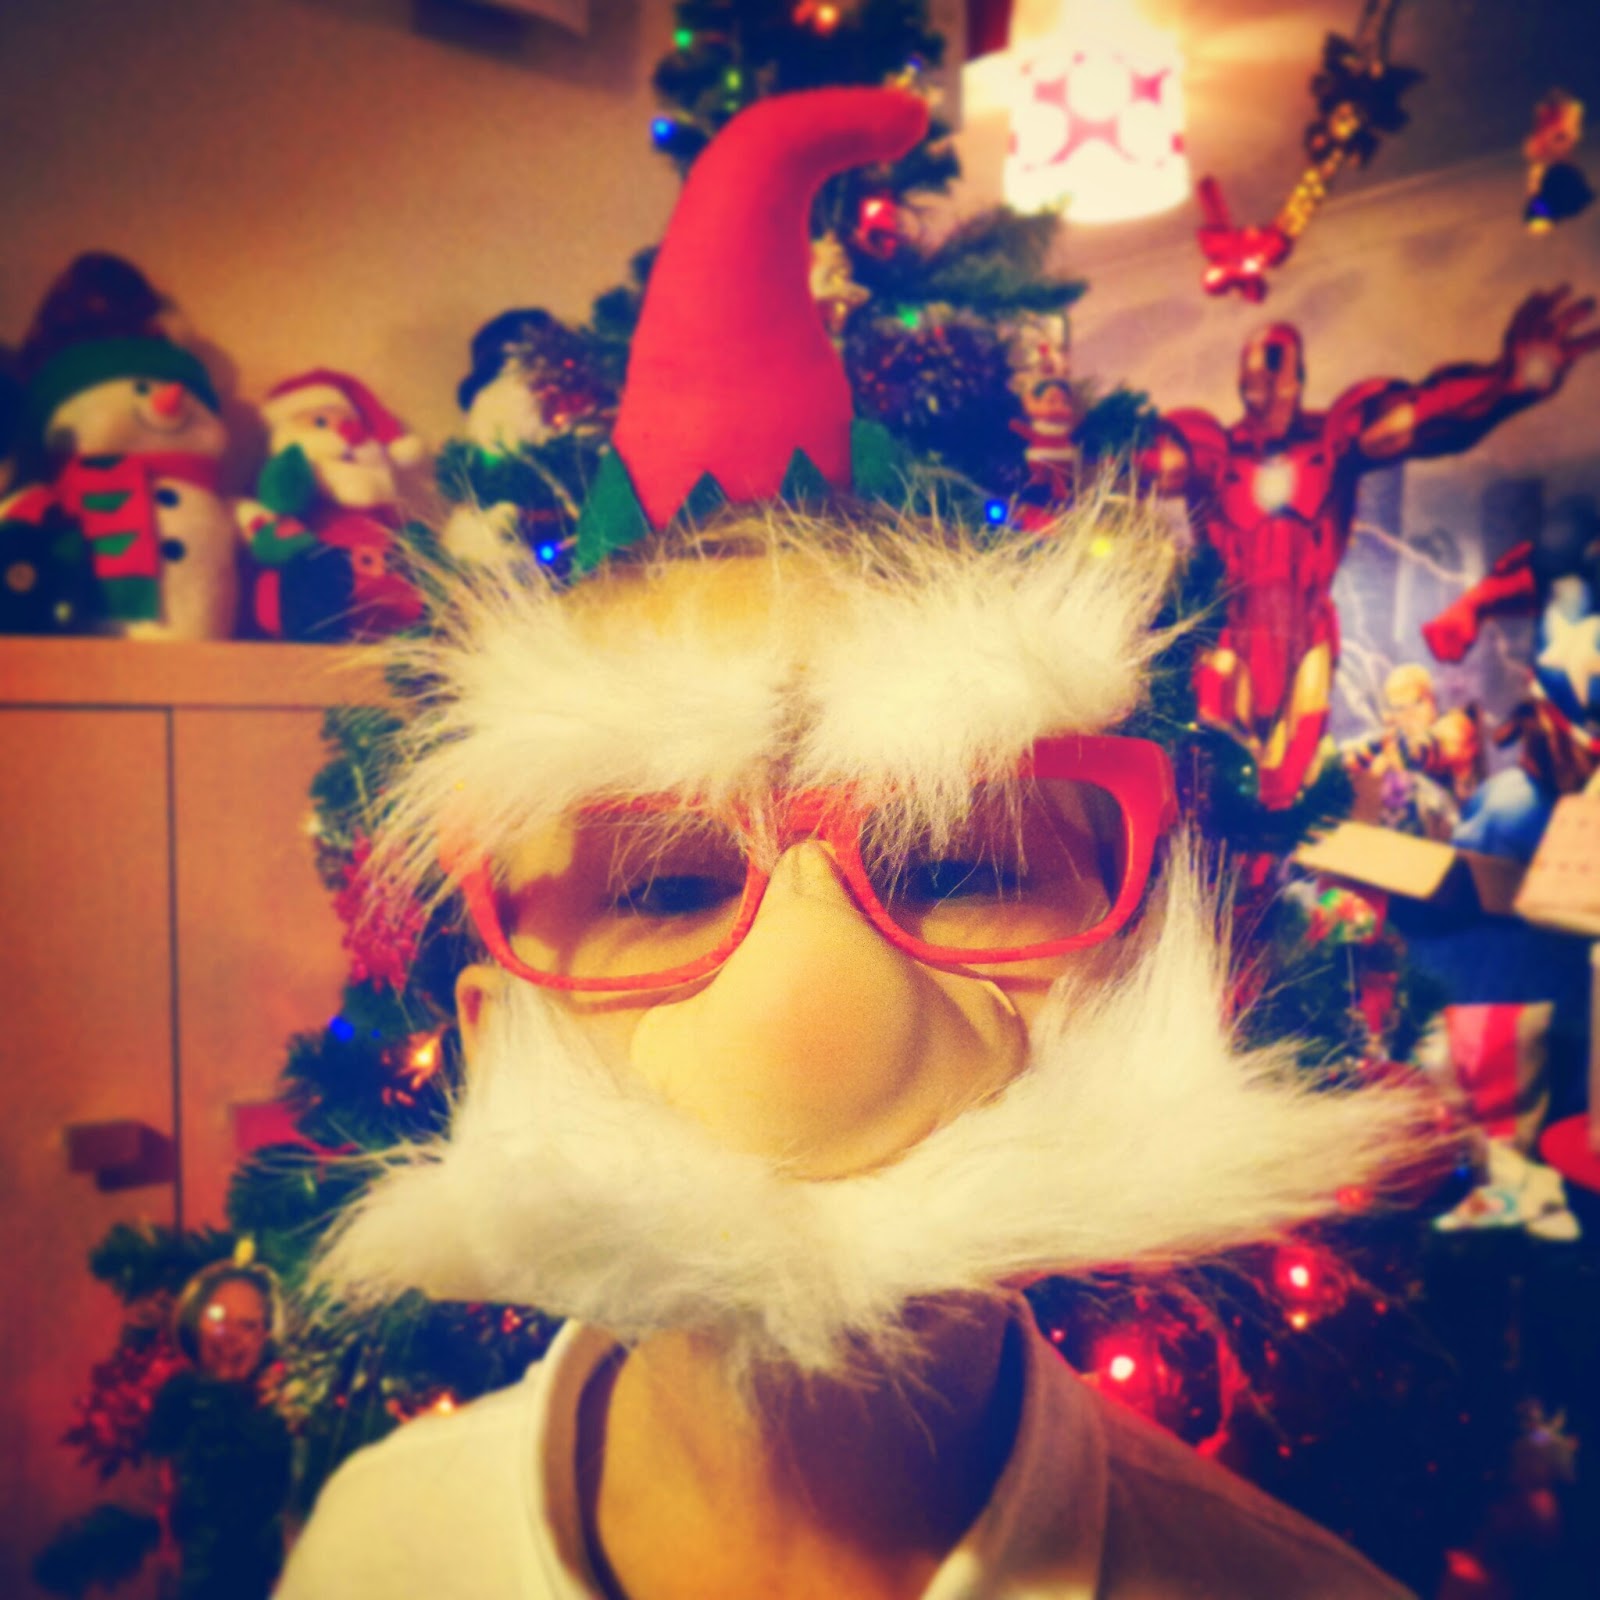 BB dressed up as a weird Santa/Elf hybrid